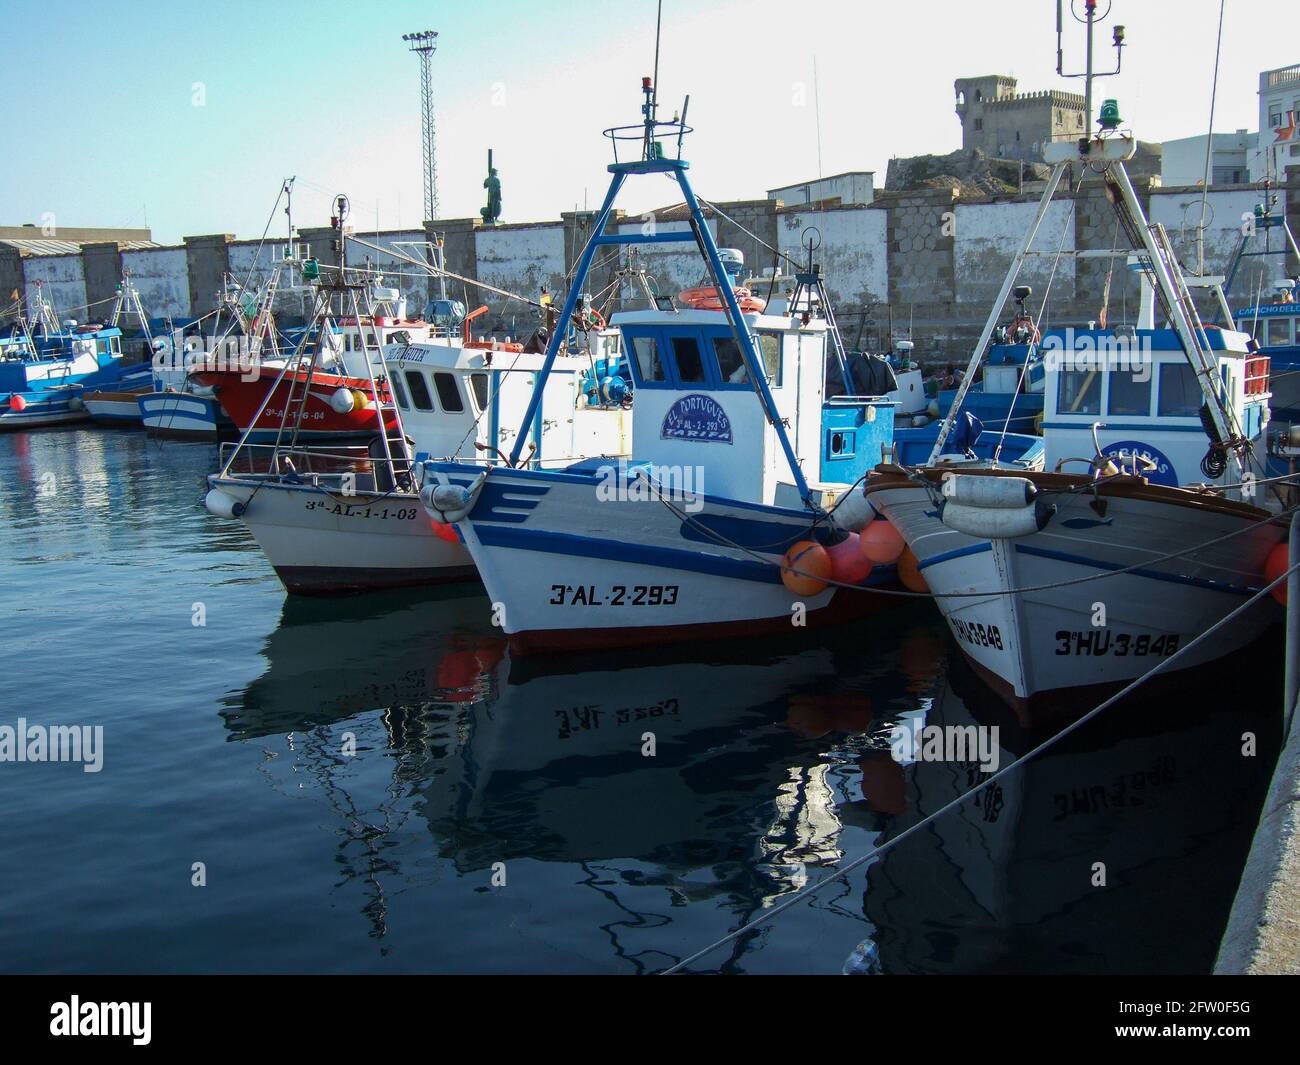 Tarifa, Cadiz, Spain - July 12 2011: Fishing boats in the port of Tarifa with blue sky Stock Photo